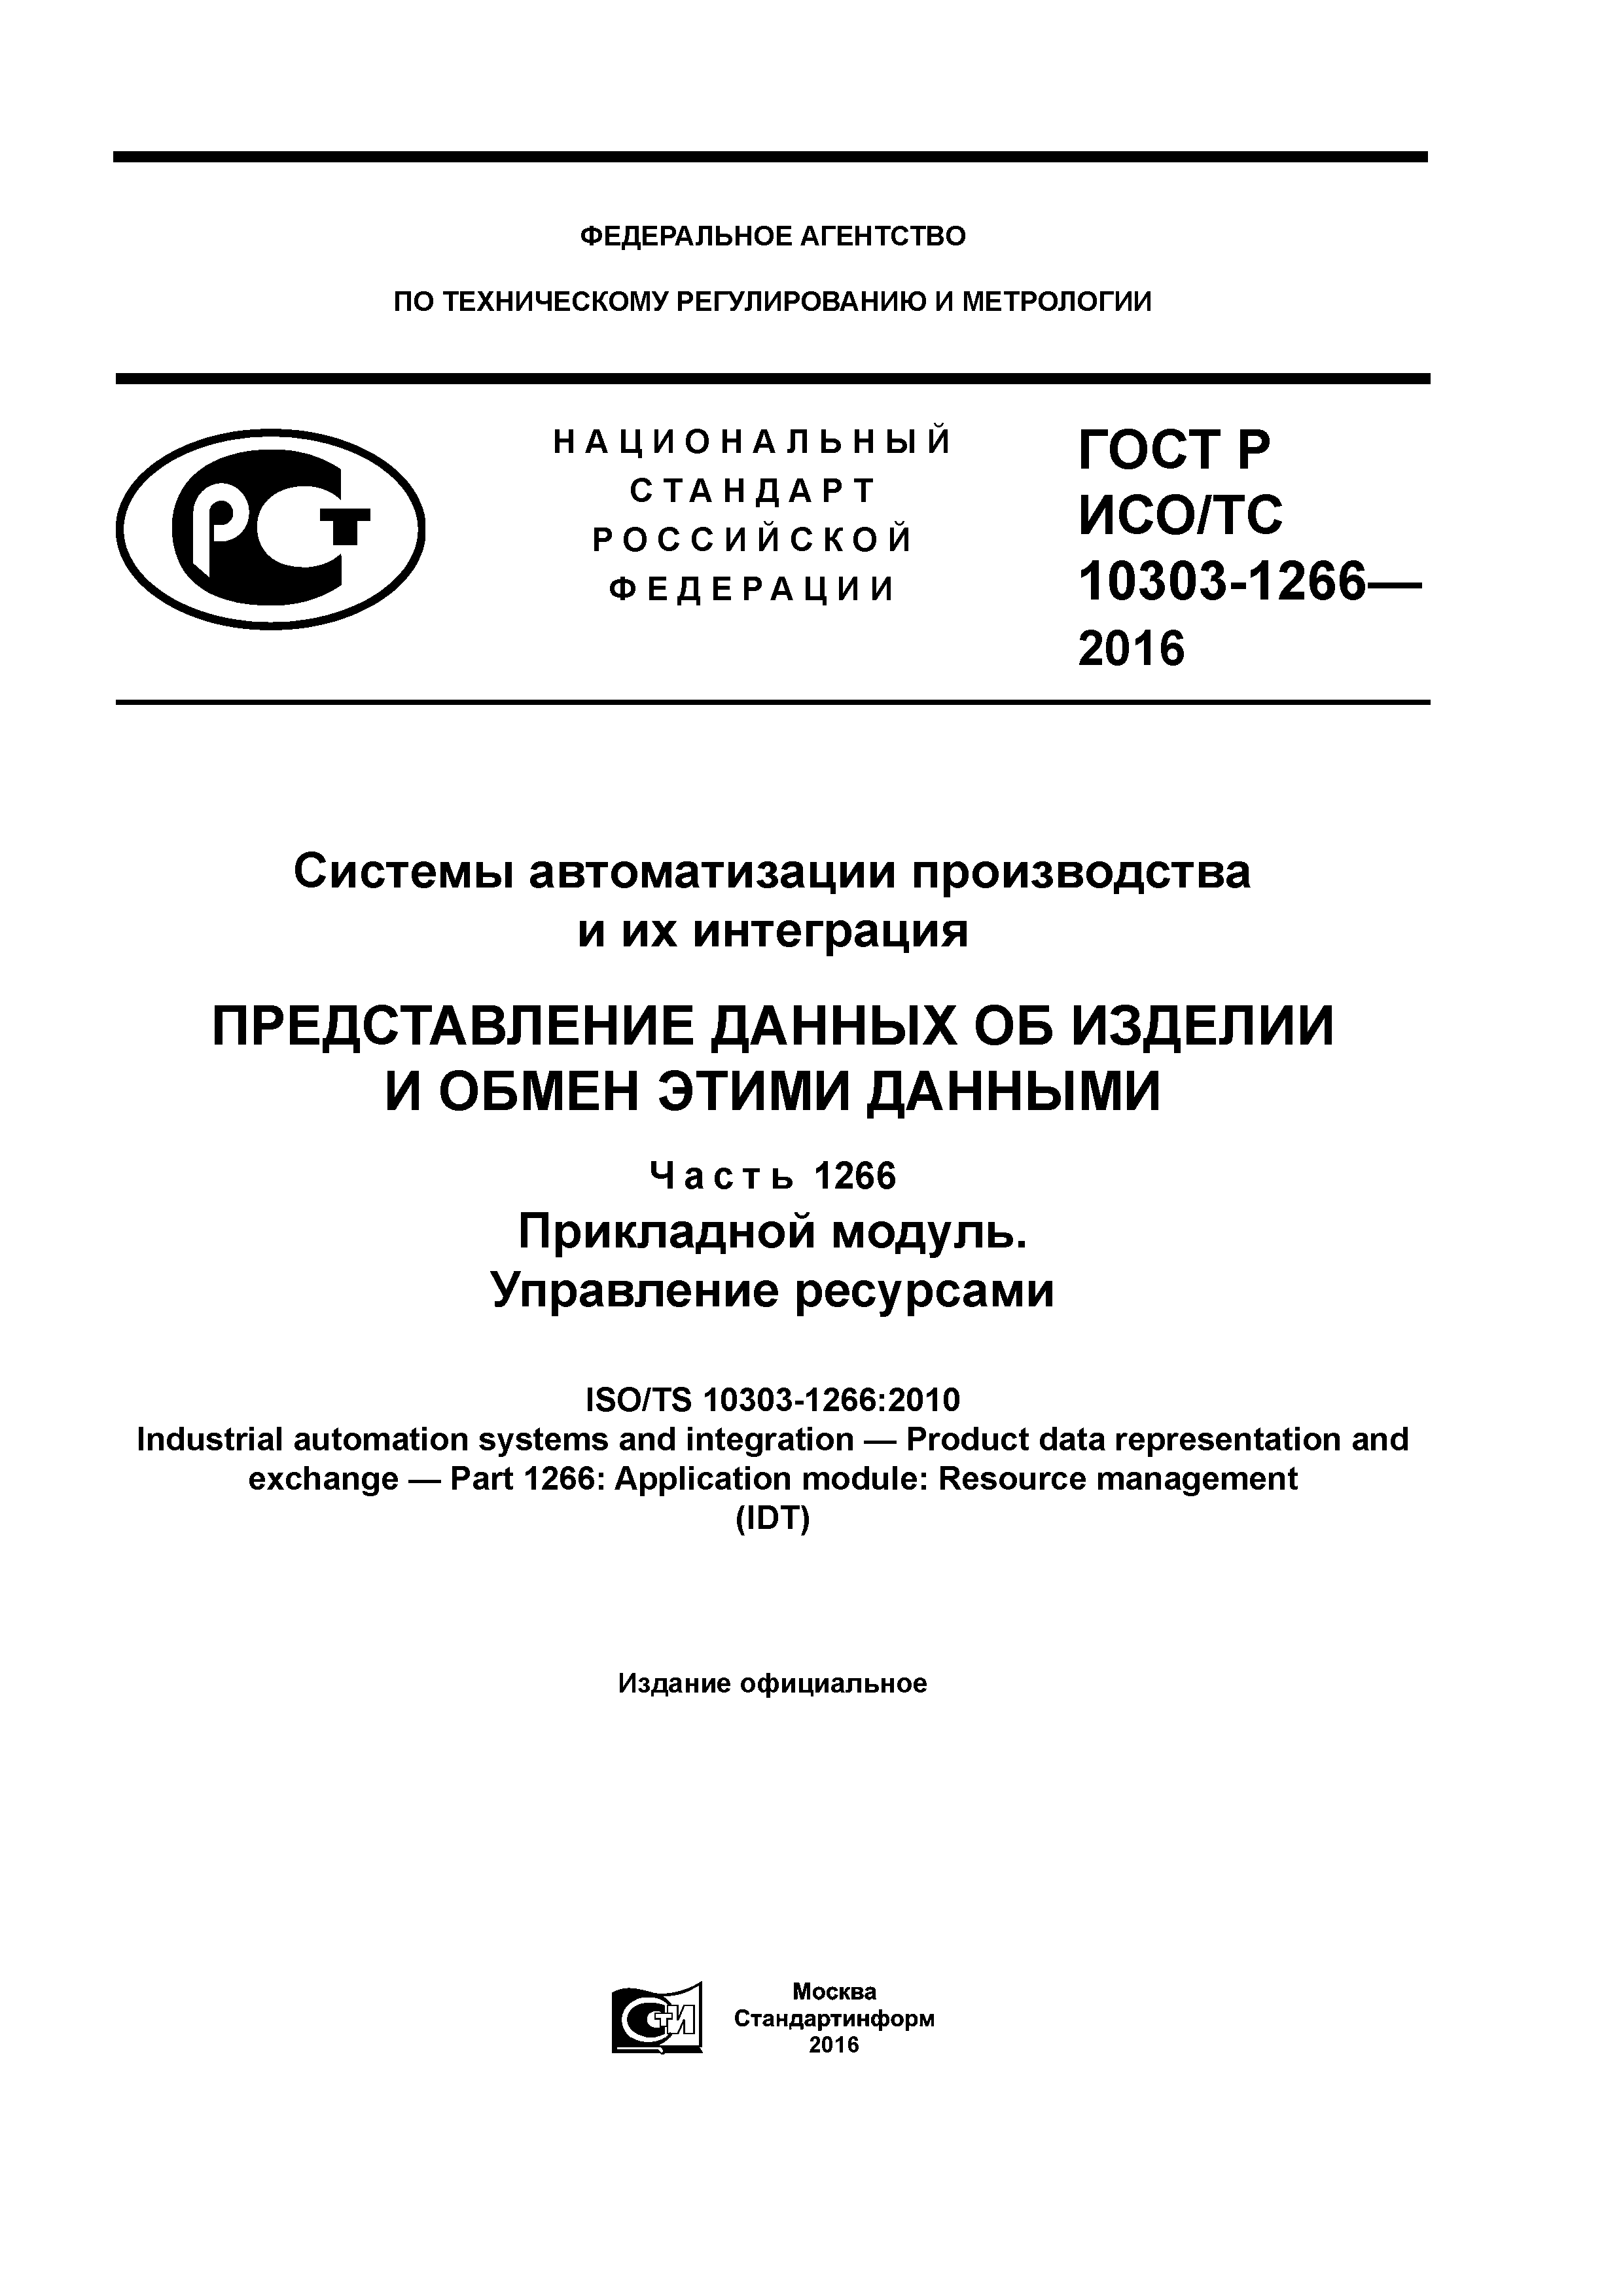 ГОСТ Р ИСО/ТС 10303-1266-2016